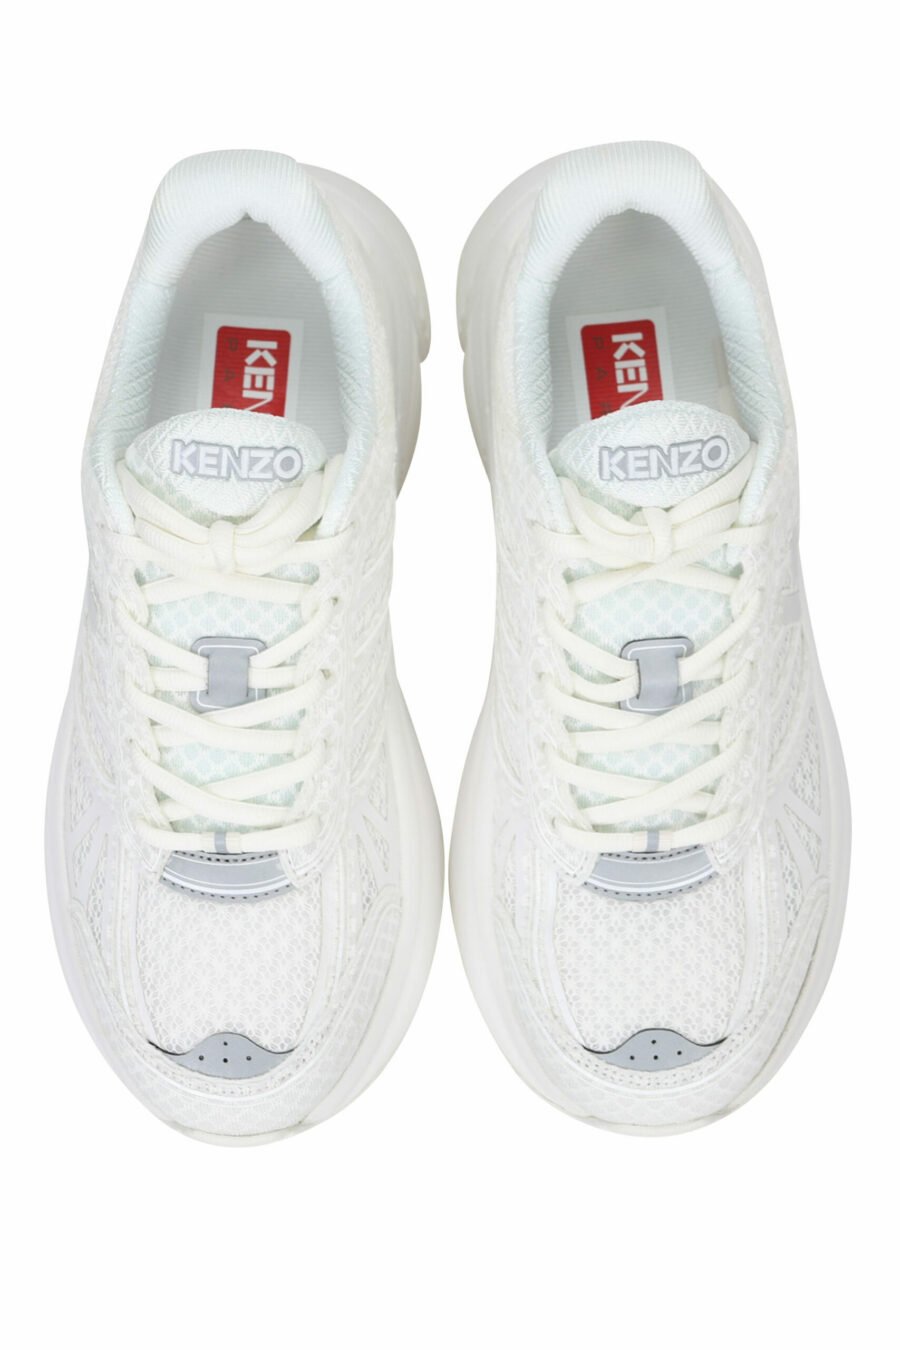 Zapatillas blancas "kenzo tech runner" con minilogo blanco - 3612230549739 4 scaled